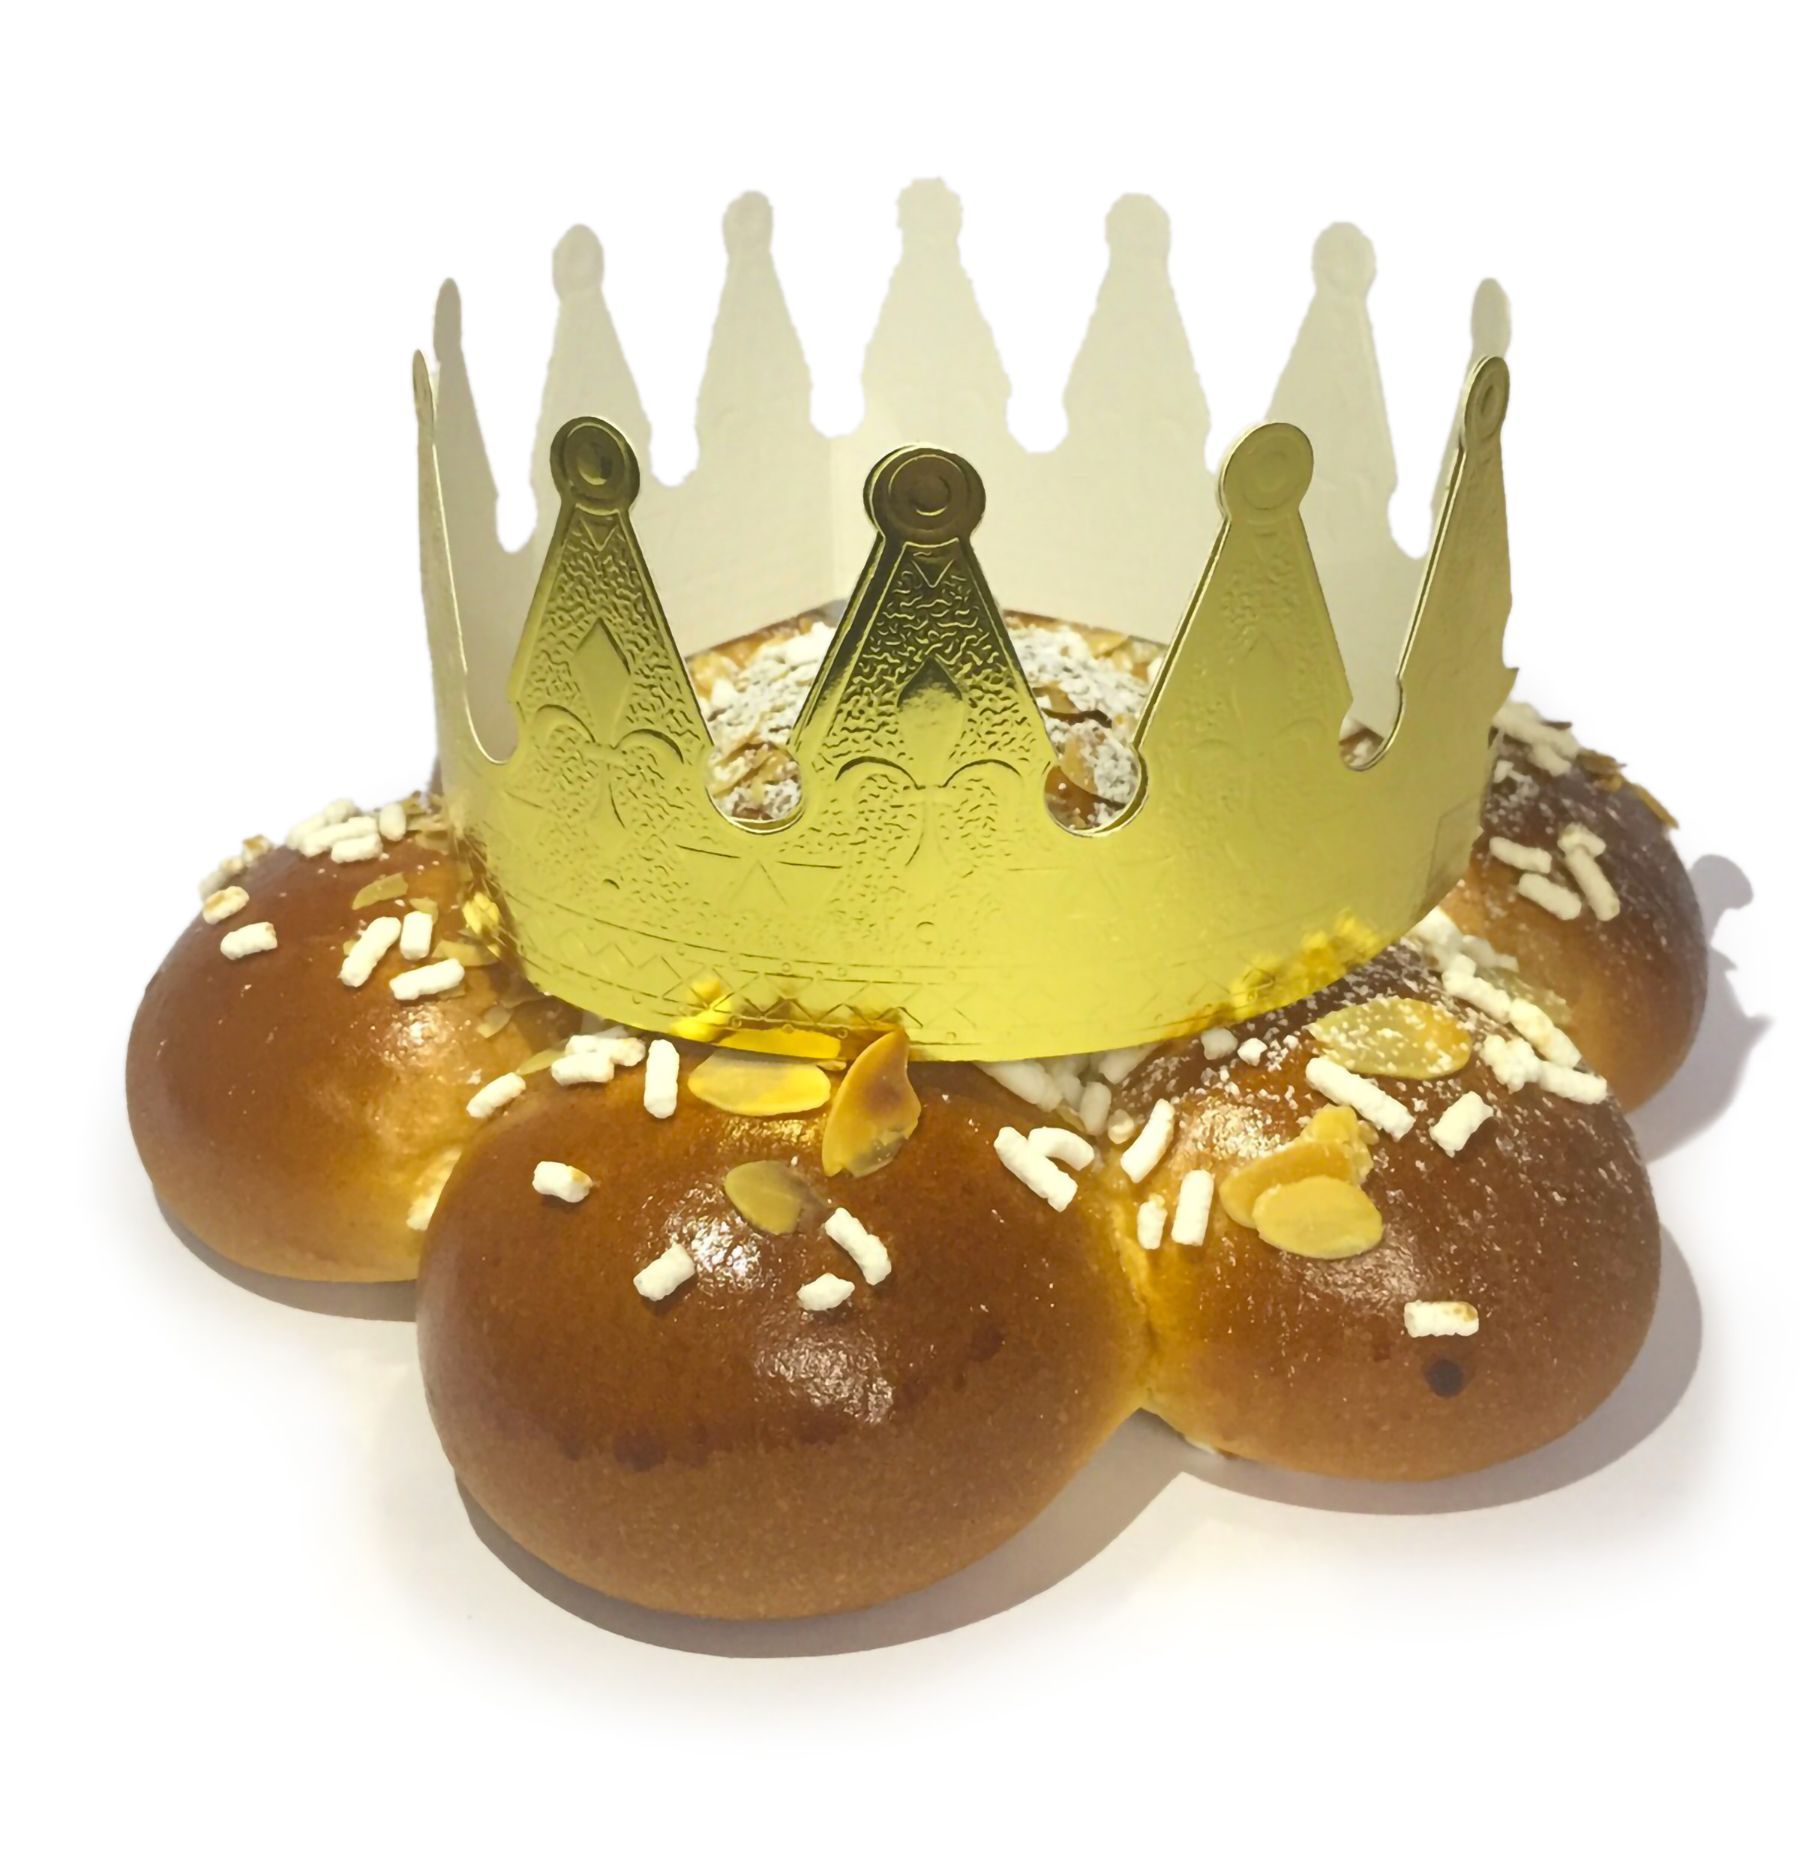 Una corona di pane con sopra una corona in carta dorata